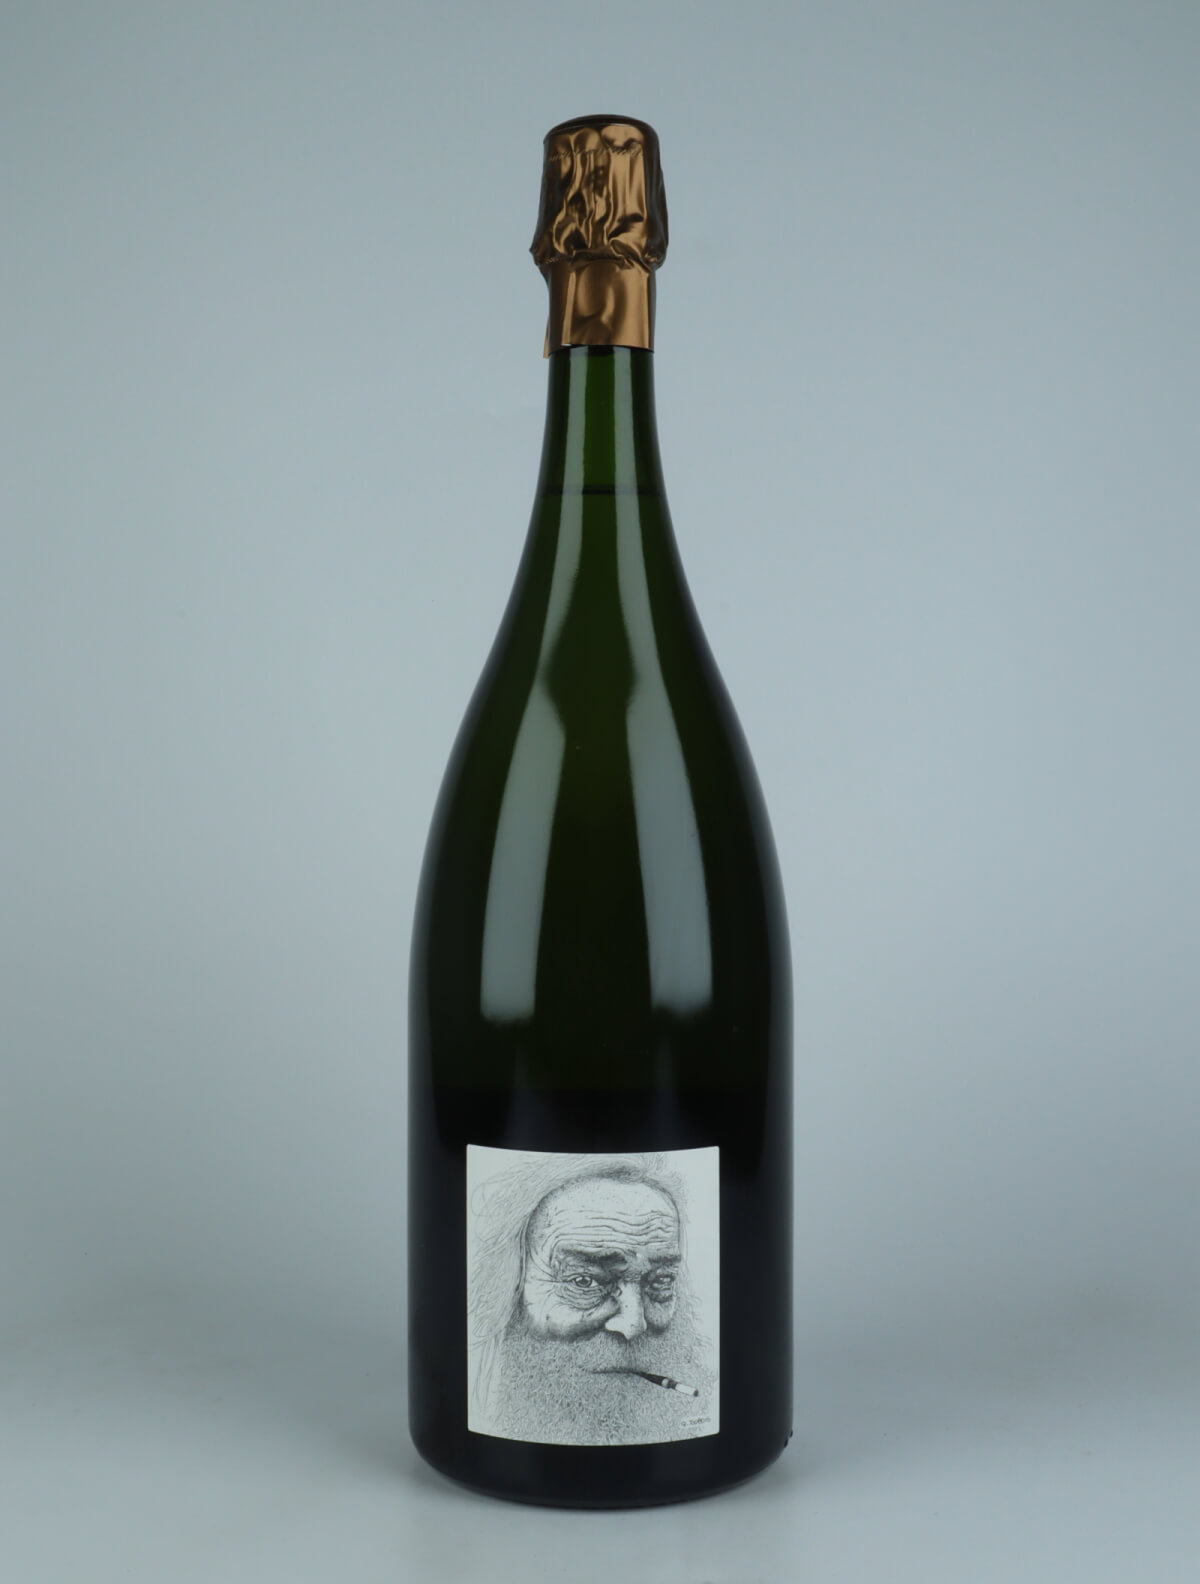 En flaske 2017 Heraclite - Chardonnay - Brut Nature - Magnum Mousserende fra Stroebel, Champagne i Frankrig